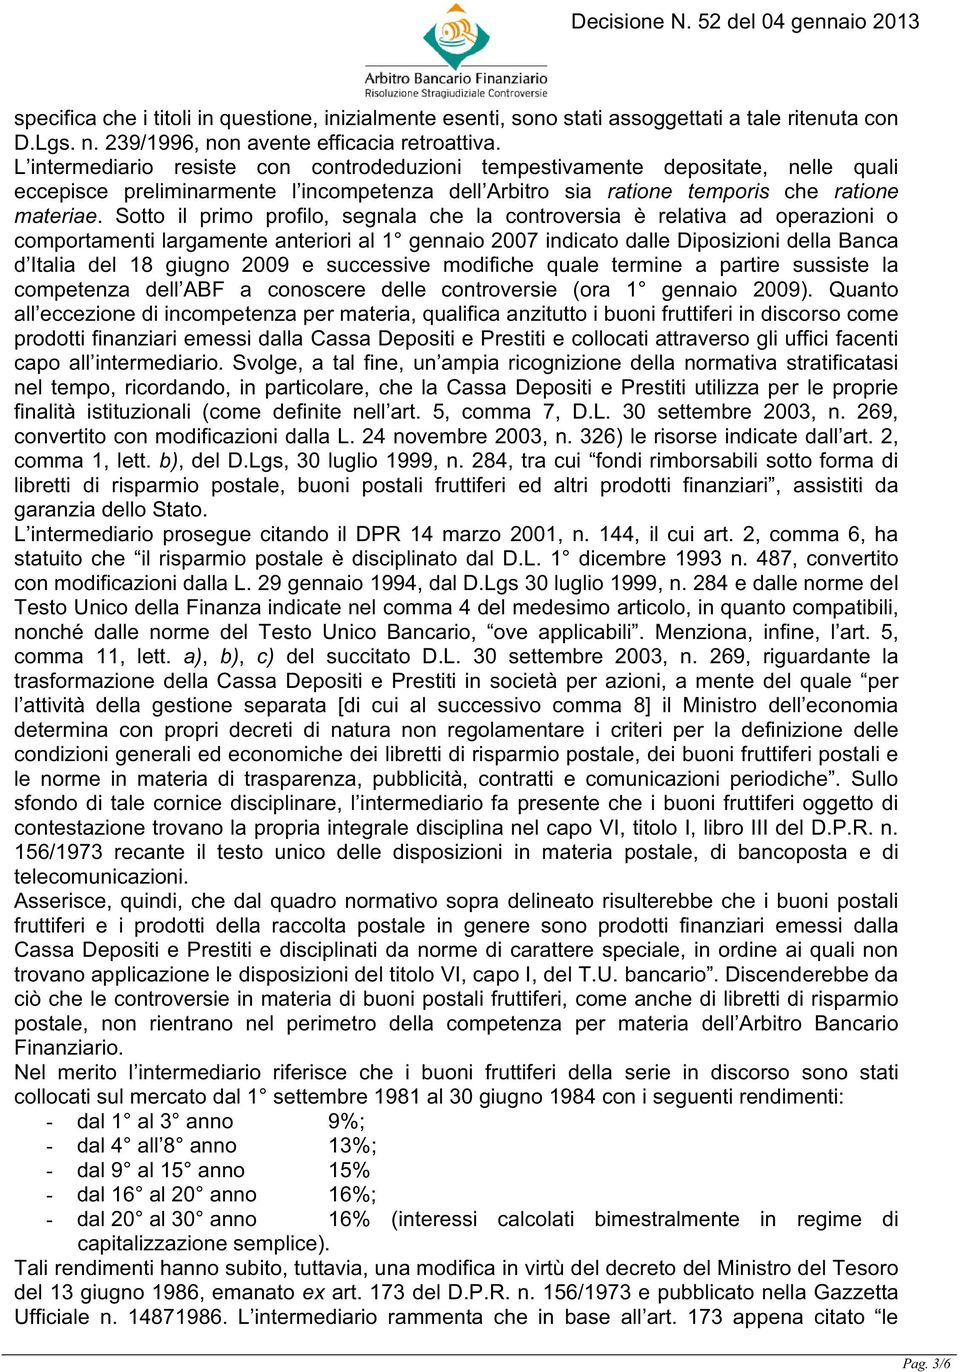 Sotto il primo profilo, segnala che la controversia è relativa ad operazioni o comportamenti largamente anteriori al 1 gennaio 2007 indicato dalle Diposizioni della Banca d Italia del 18 giugno 2009